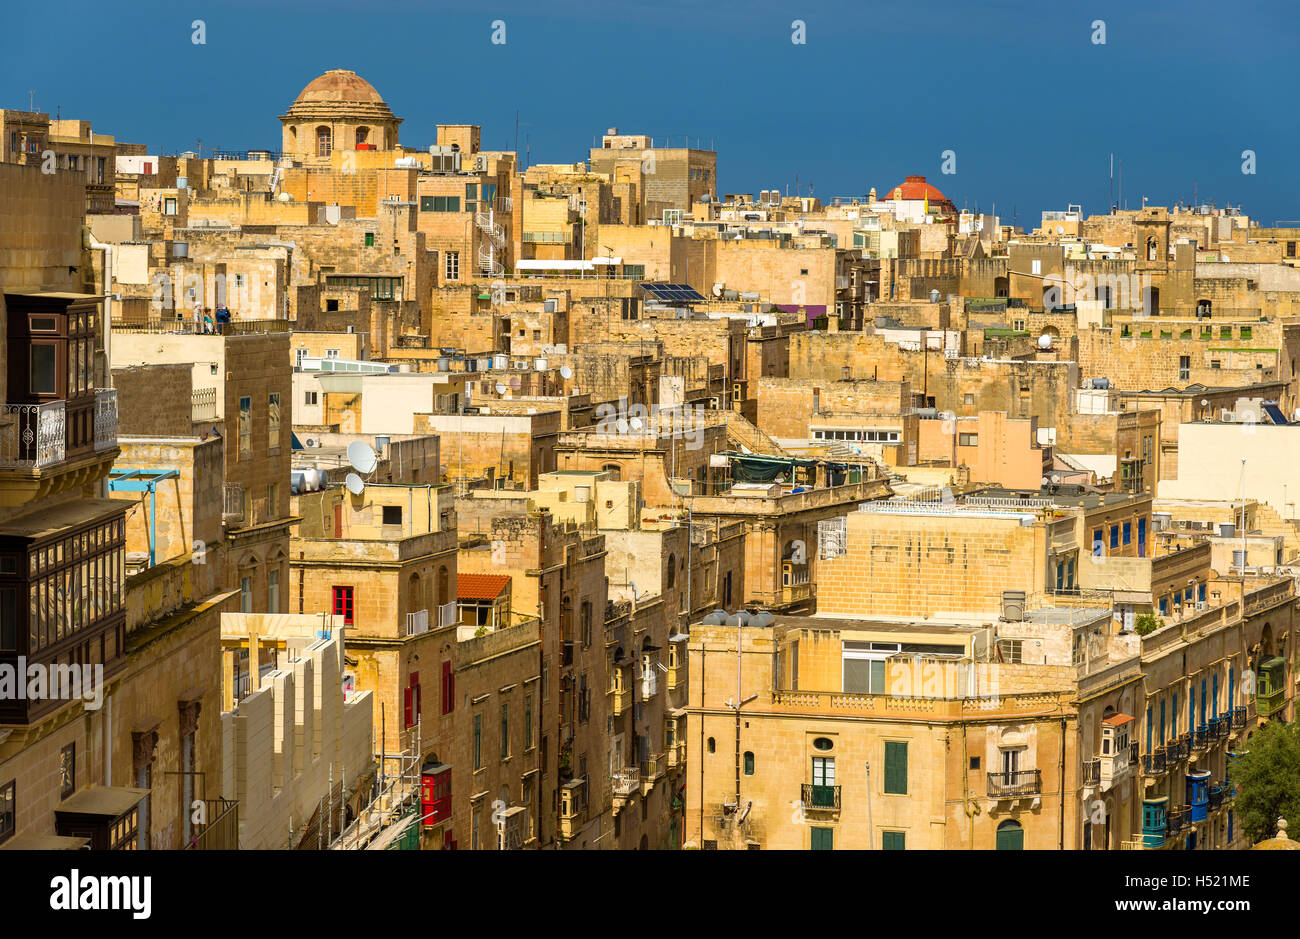 View of the historic centre of Valletta - Malta Stock Photo